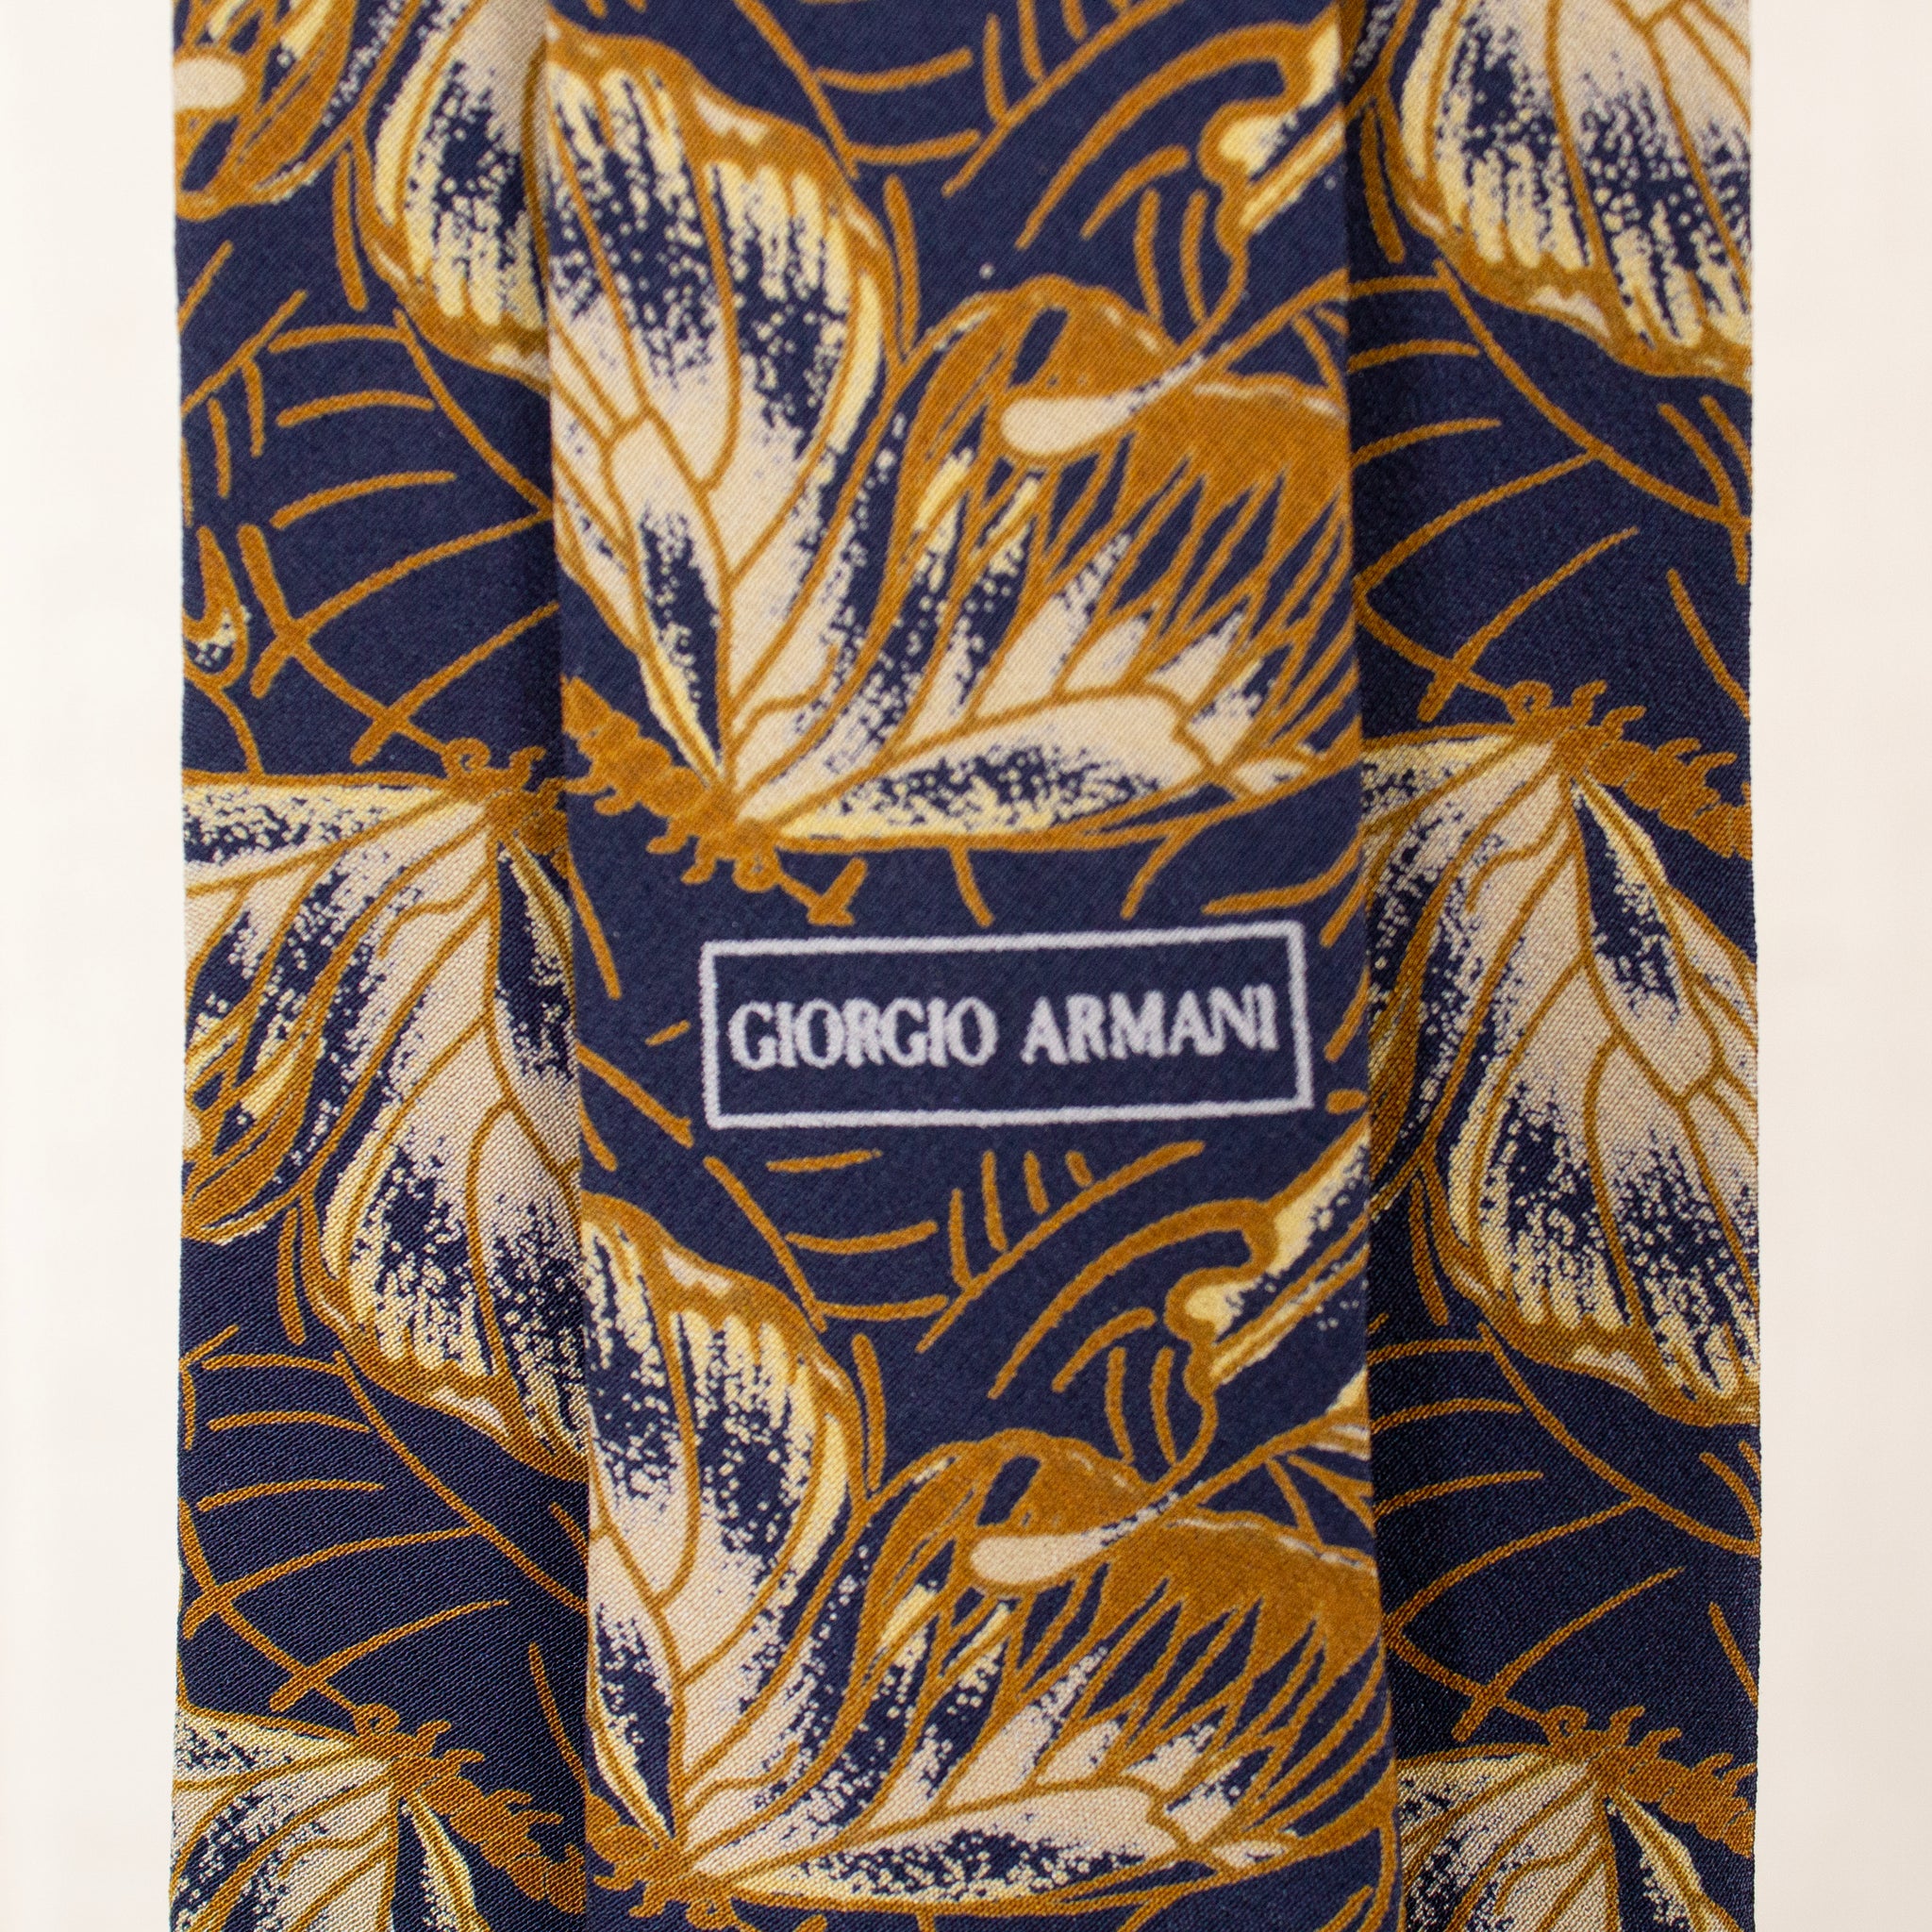 Giorgio Armani Butterfly Tie